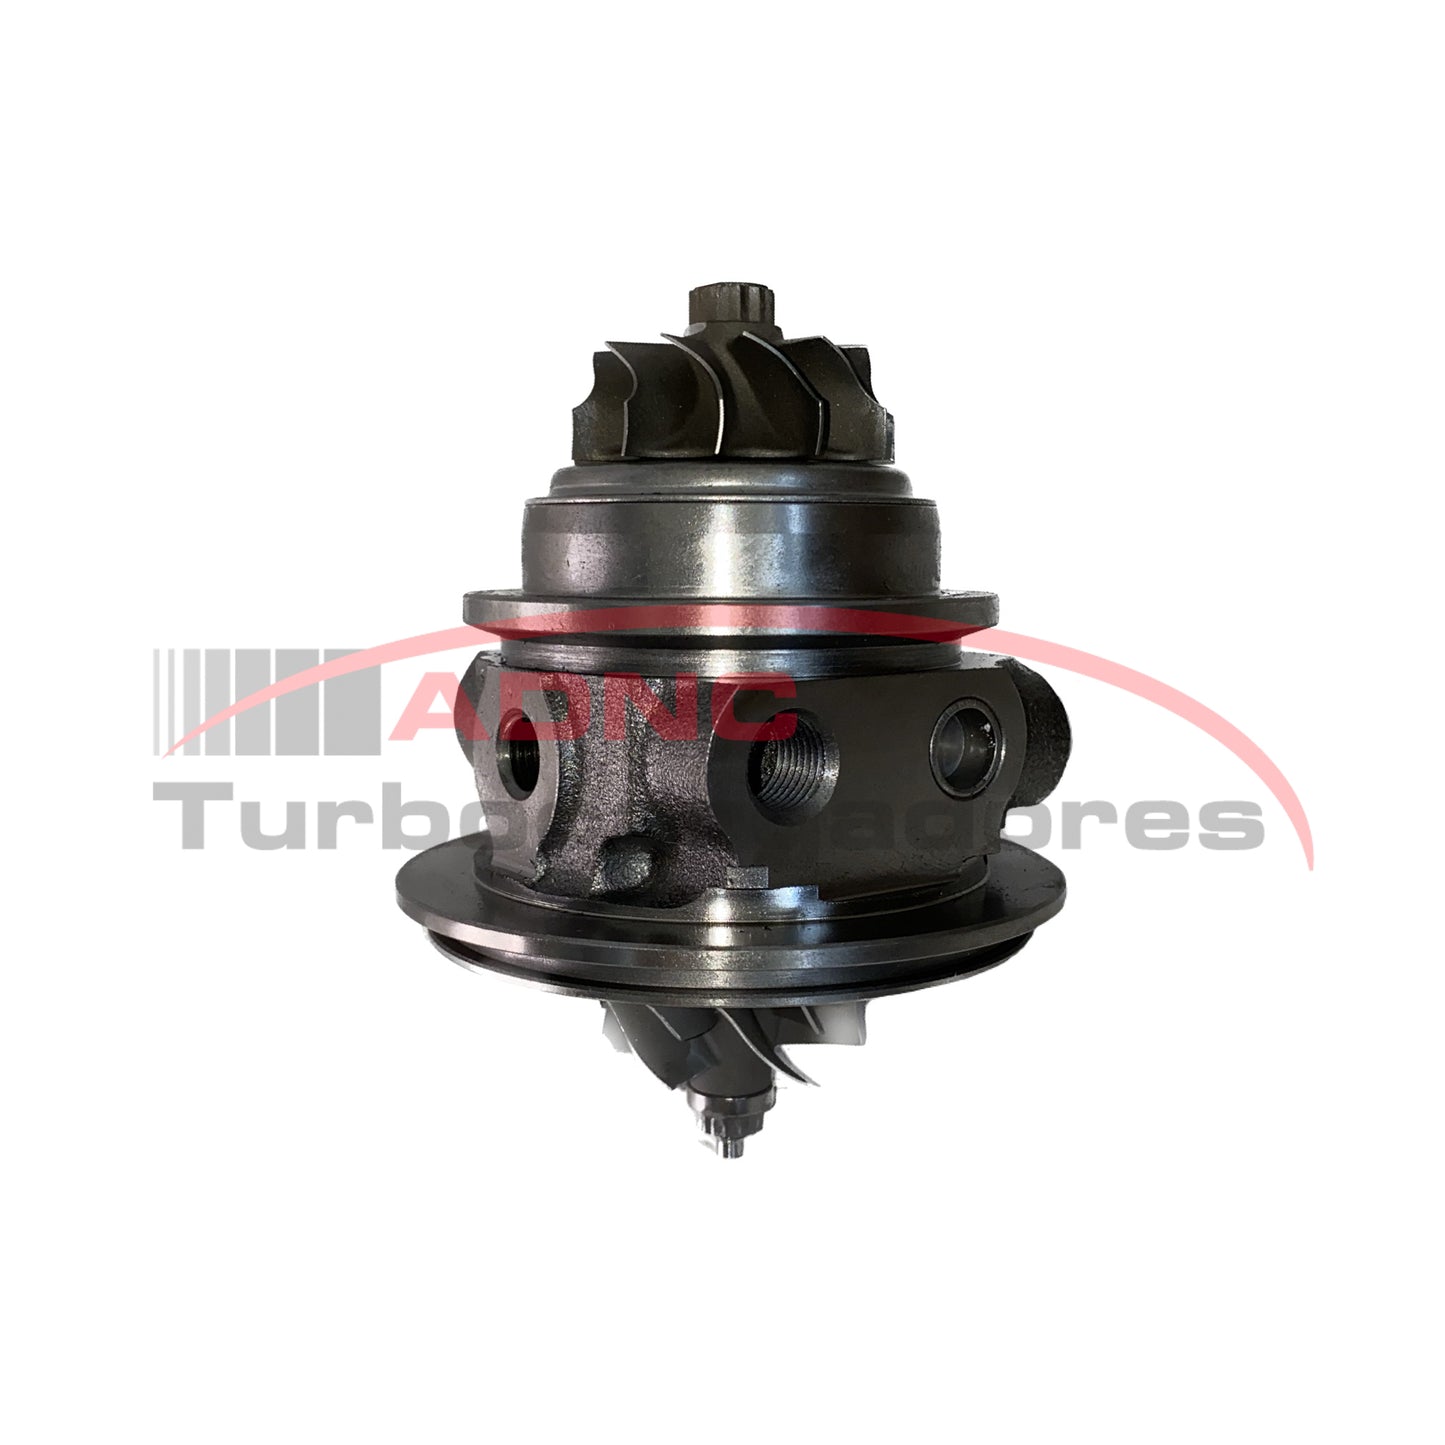 Cartridge Turbo: TF035 - Aplicación: Hyundai H1